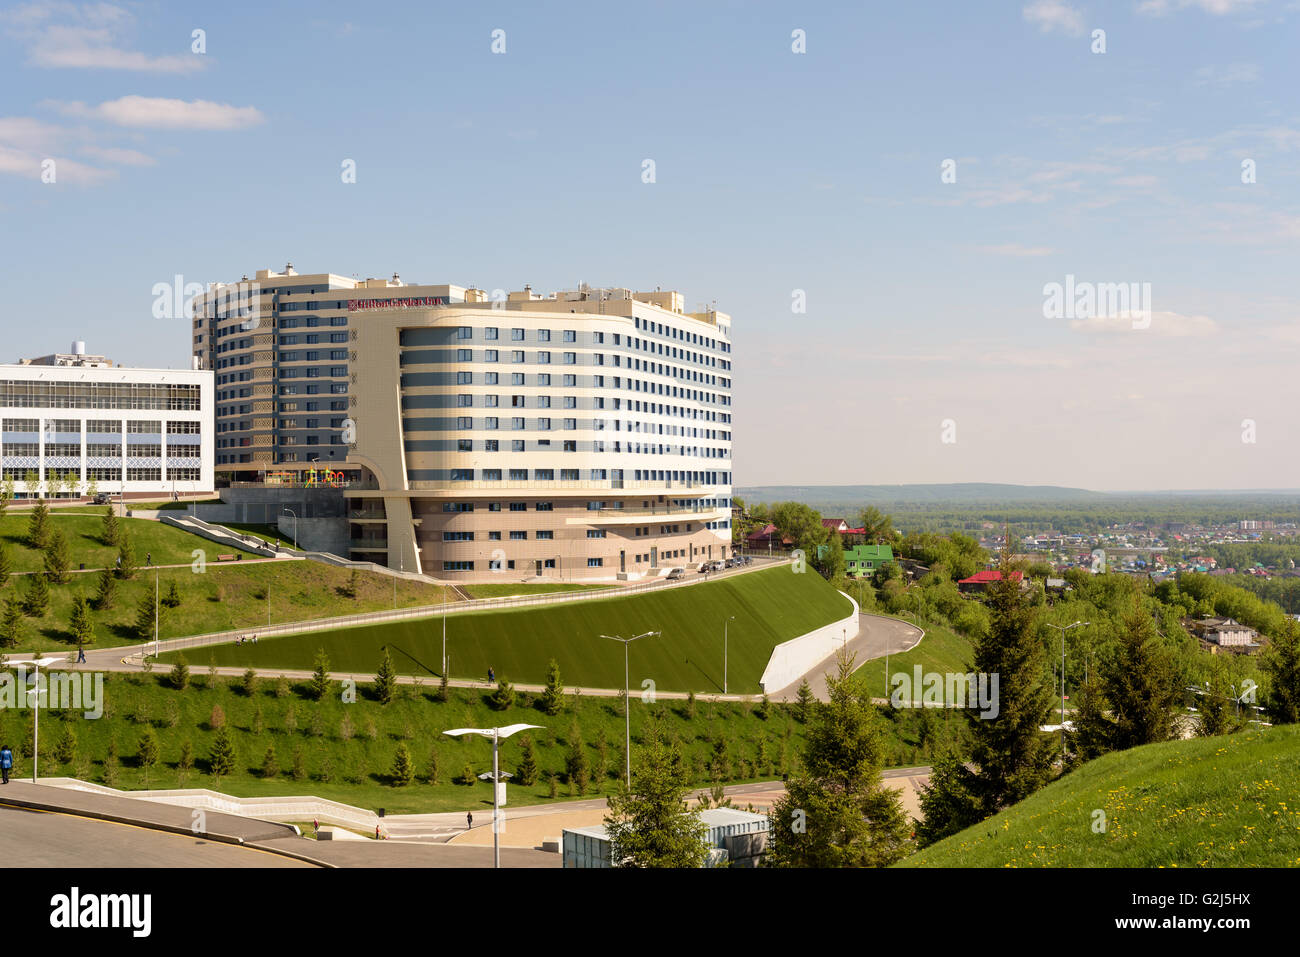 La famosa catena alberghiera Hilton Garden Inn, a Ufa, Repubblica del Bashkortostan, Federazione russa Foto Stock